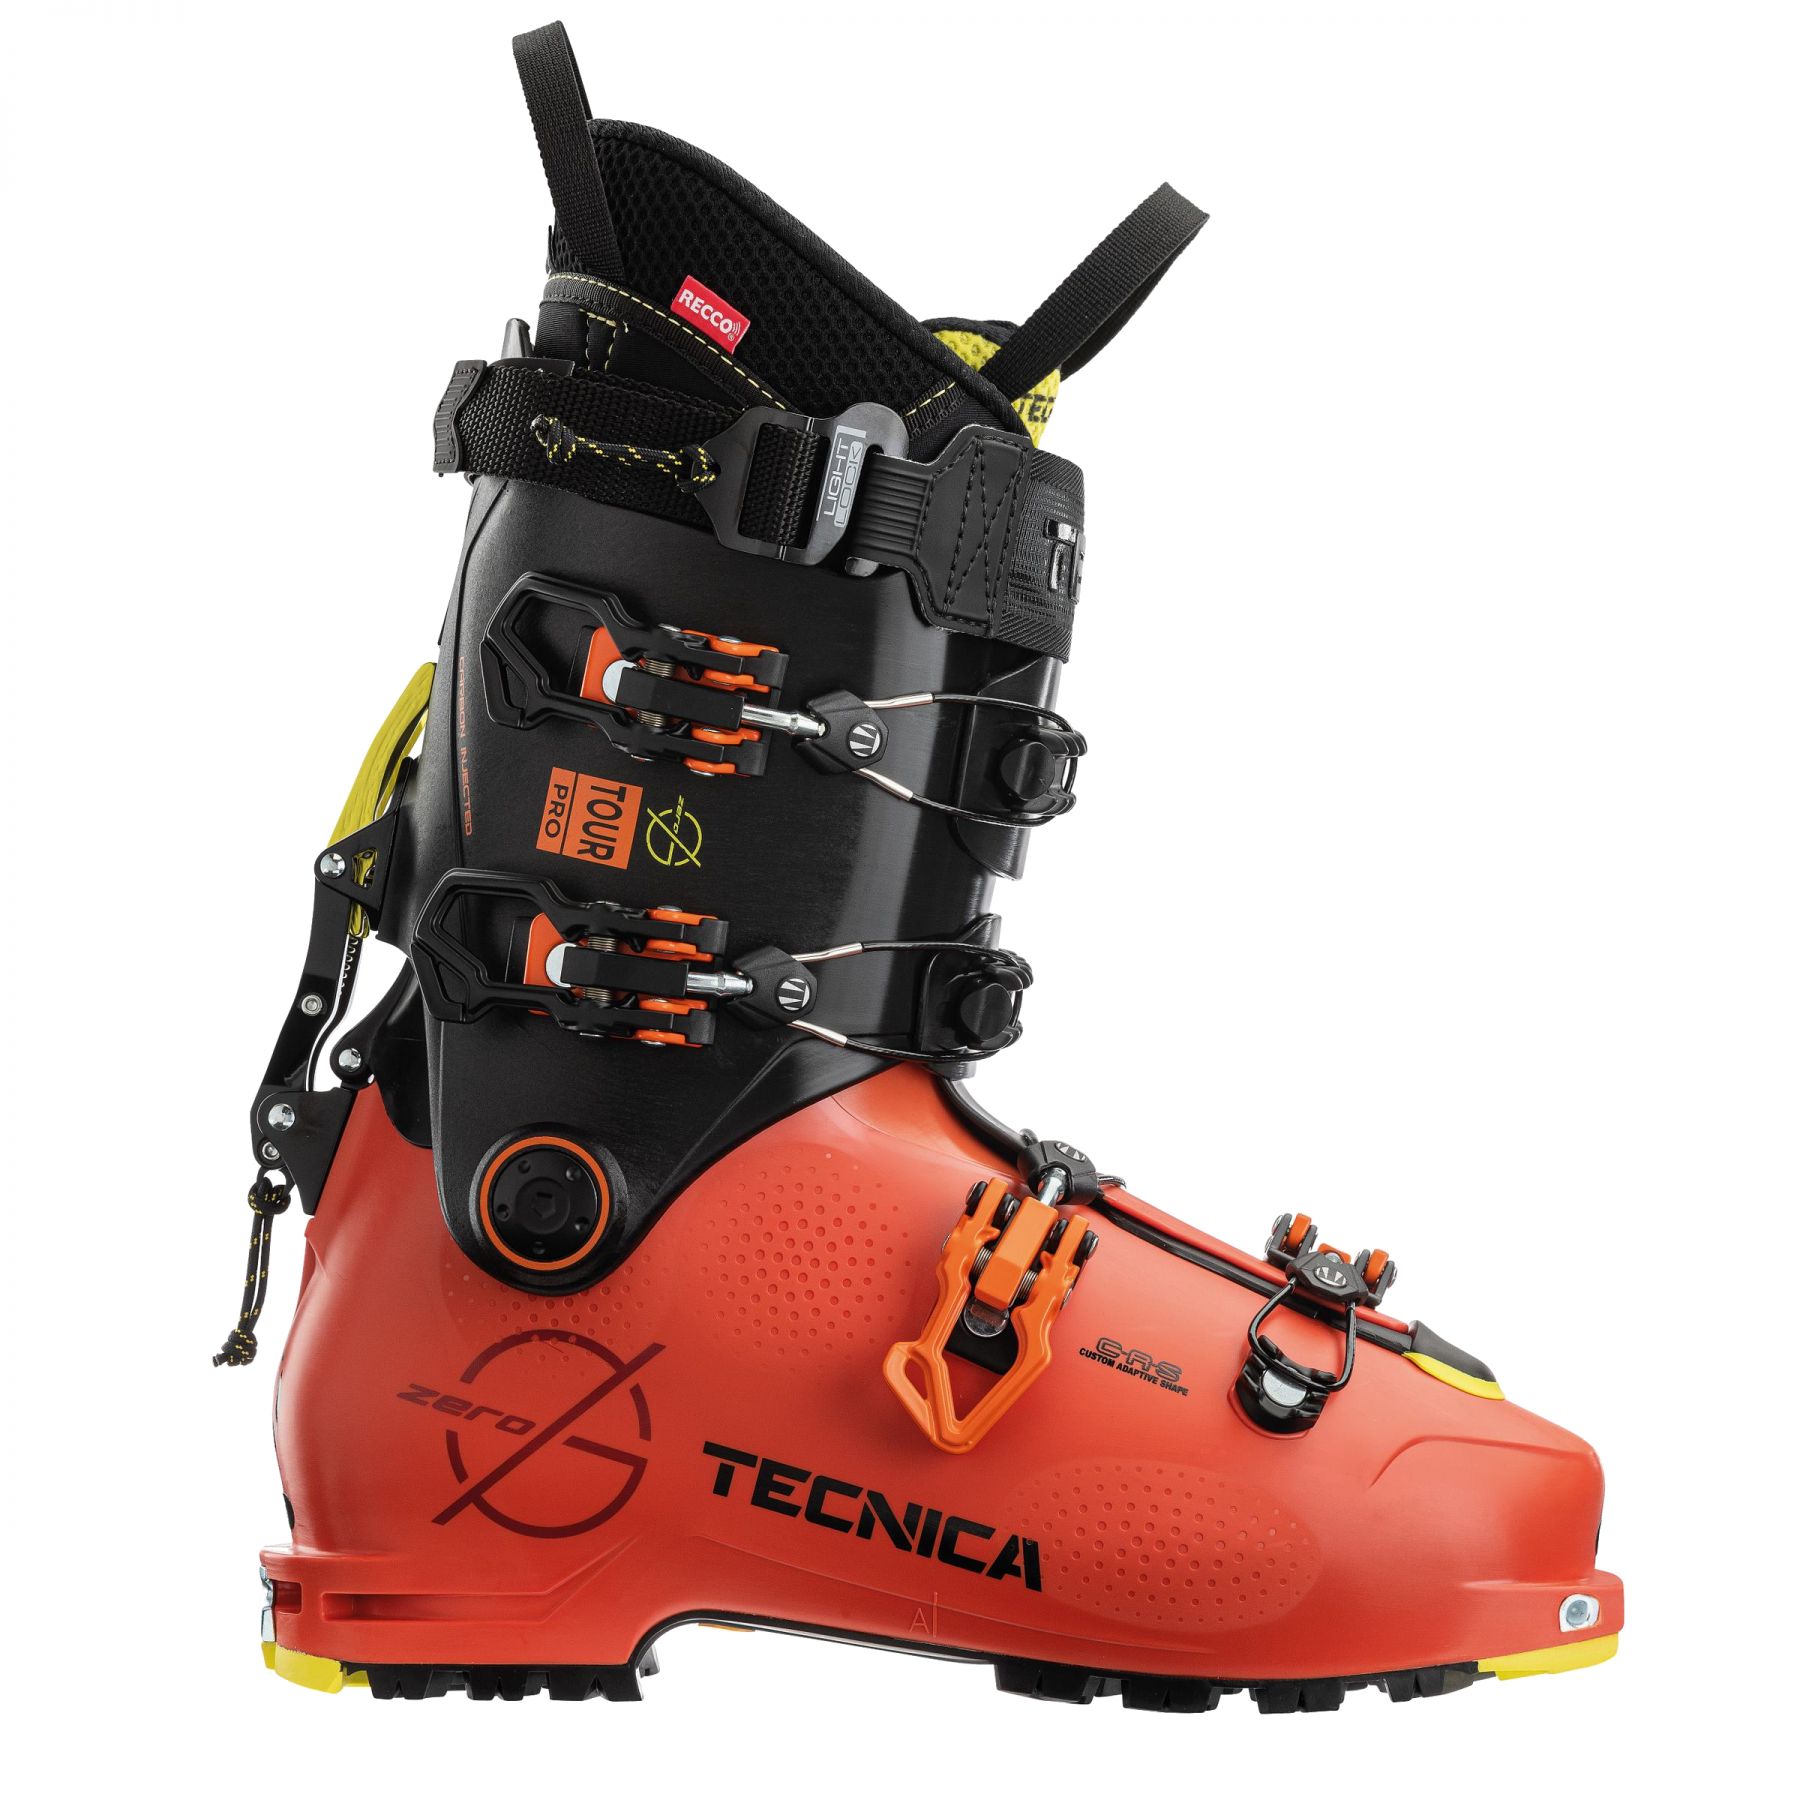 Brug Tecnica Zero G Tour Pro, skistøvler, herre, orange/sort til en forbedret oplevelse